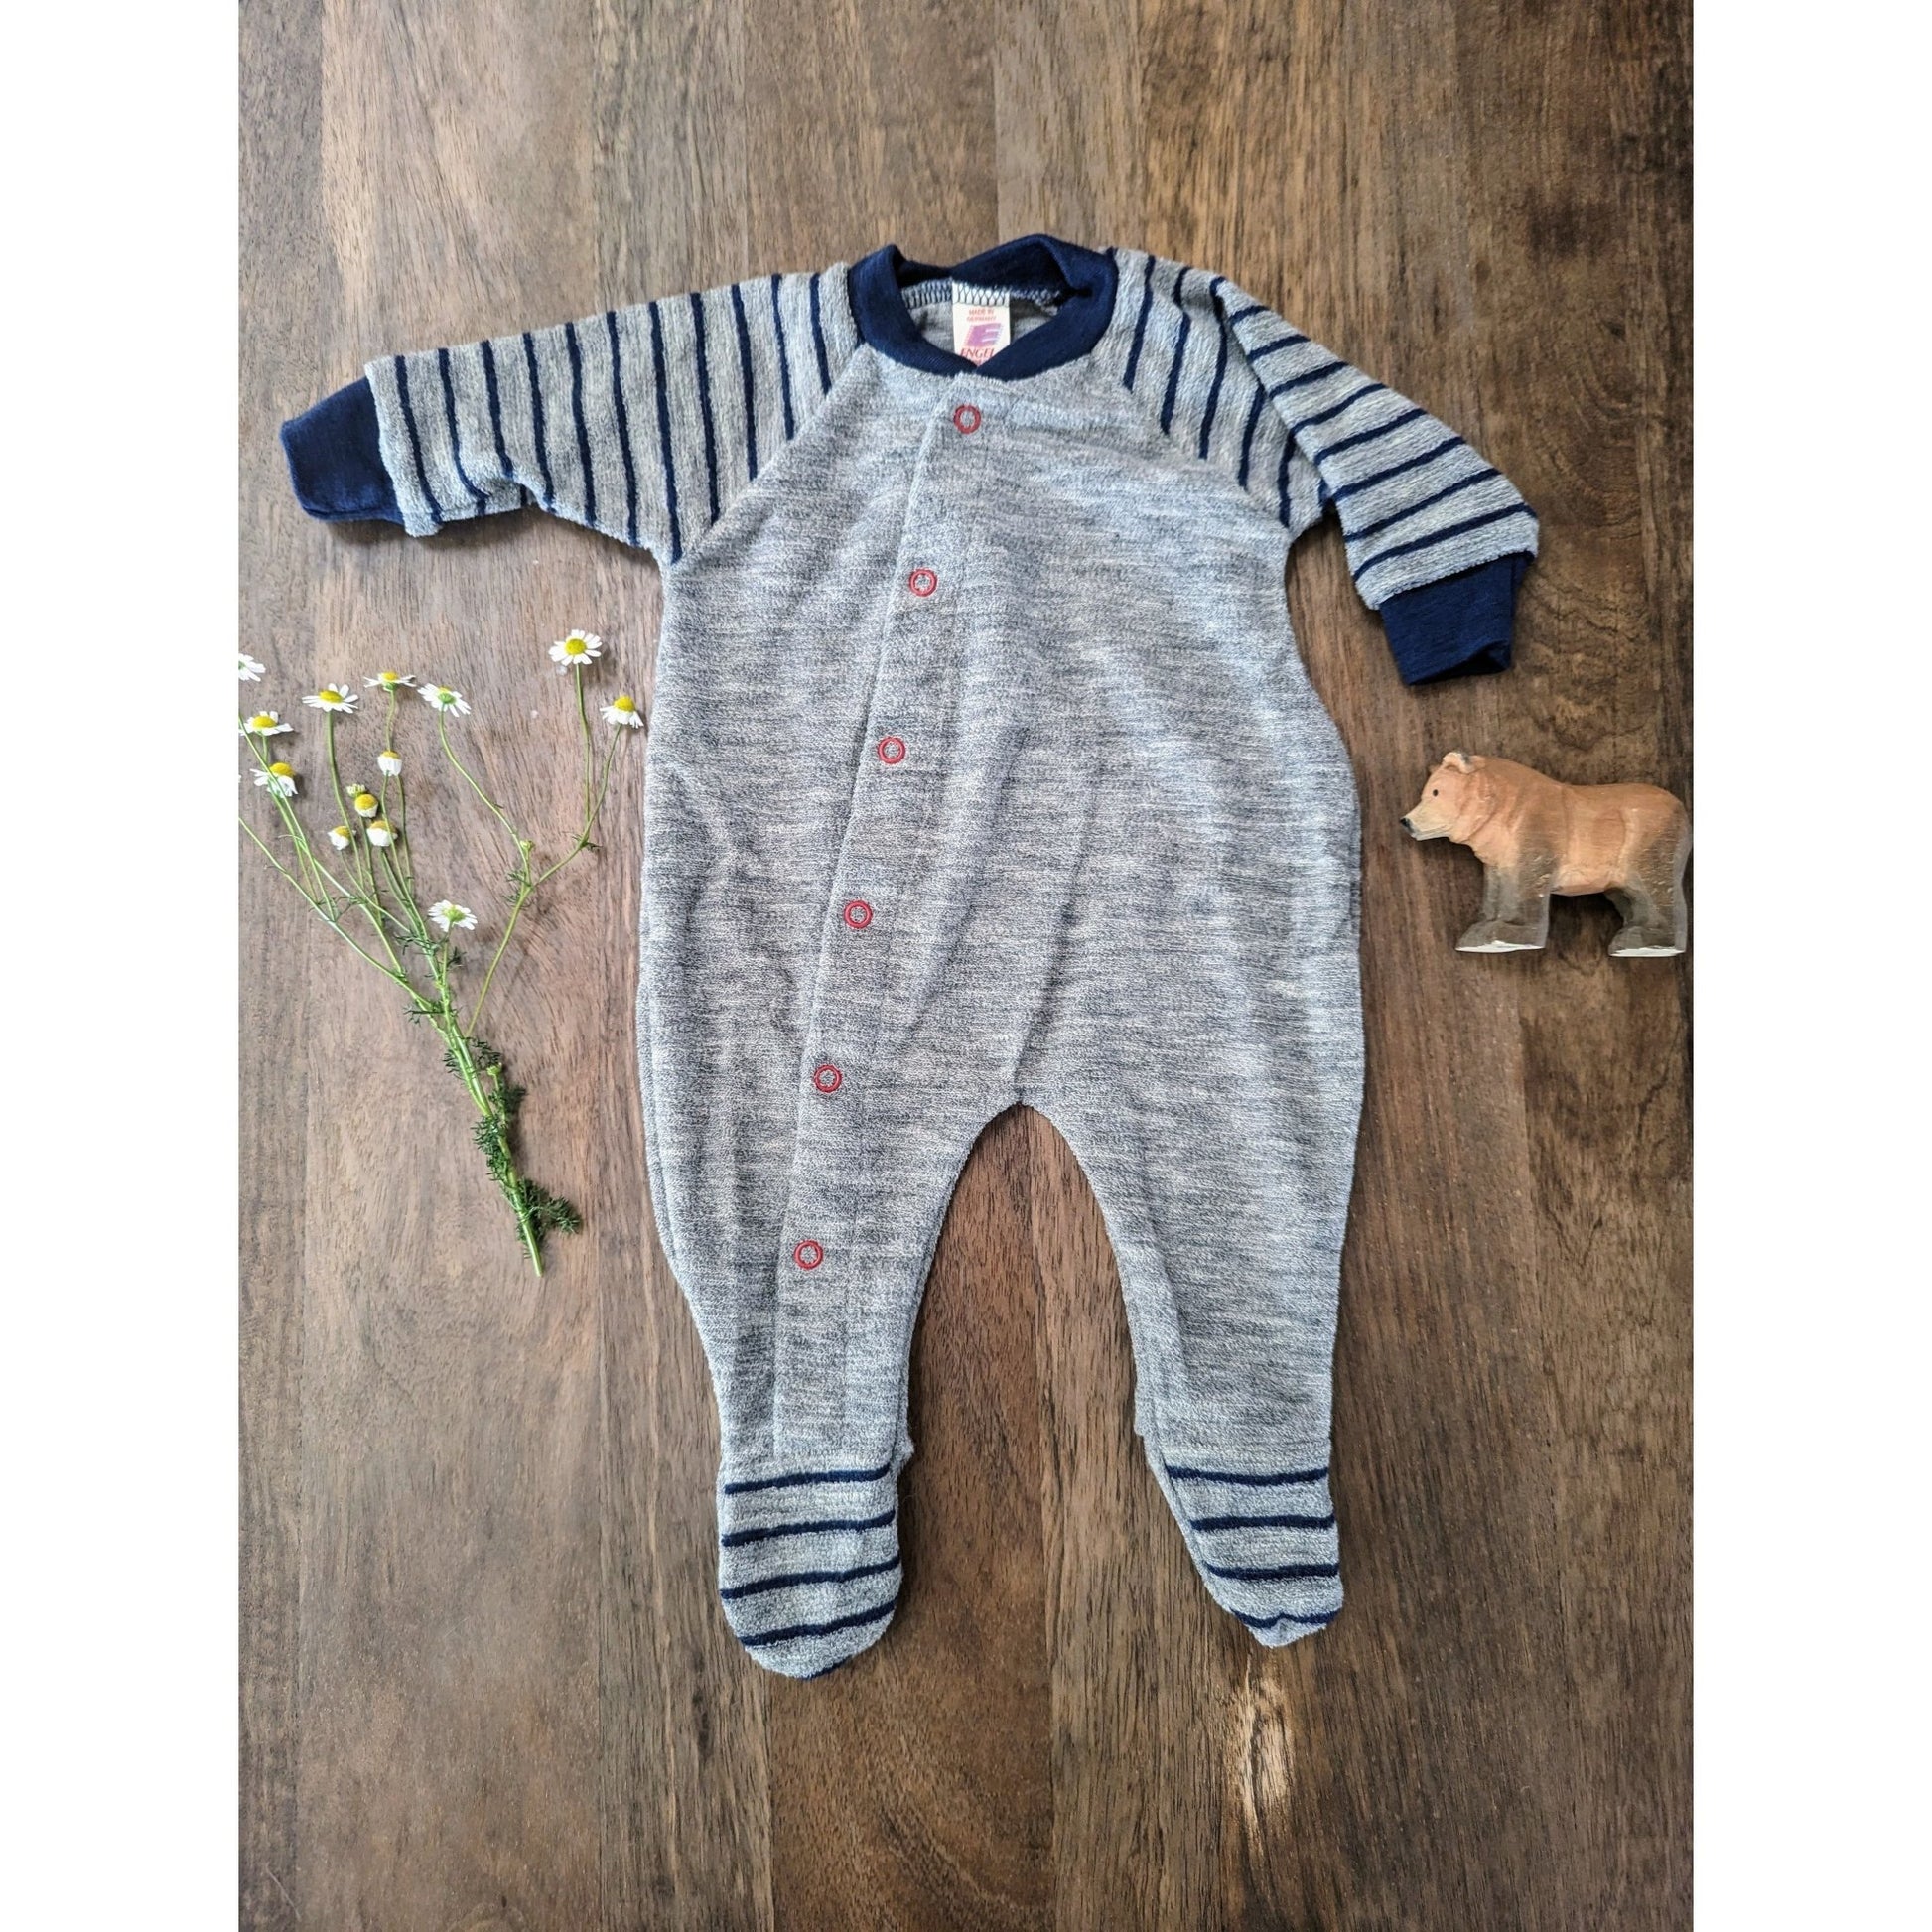 Engel - Organic Merino Terry Baby Pajama - Nature's Wild Child